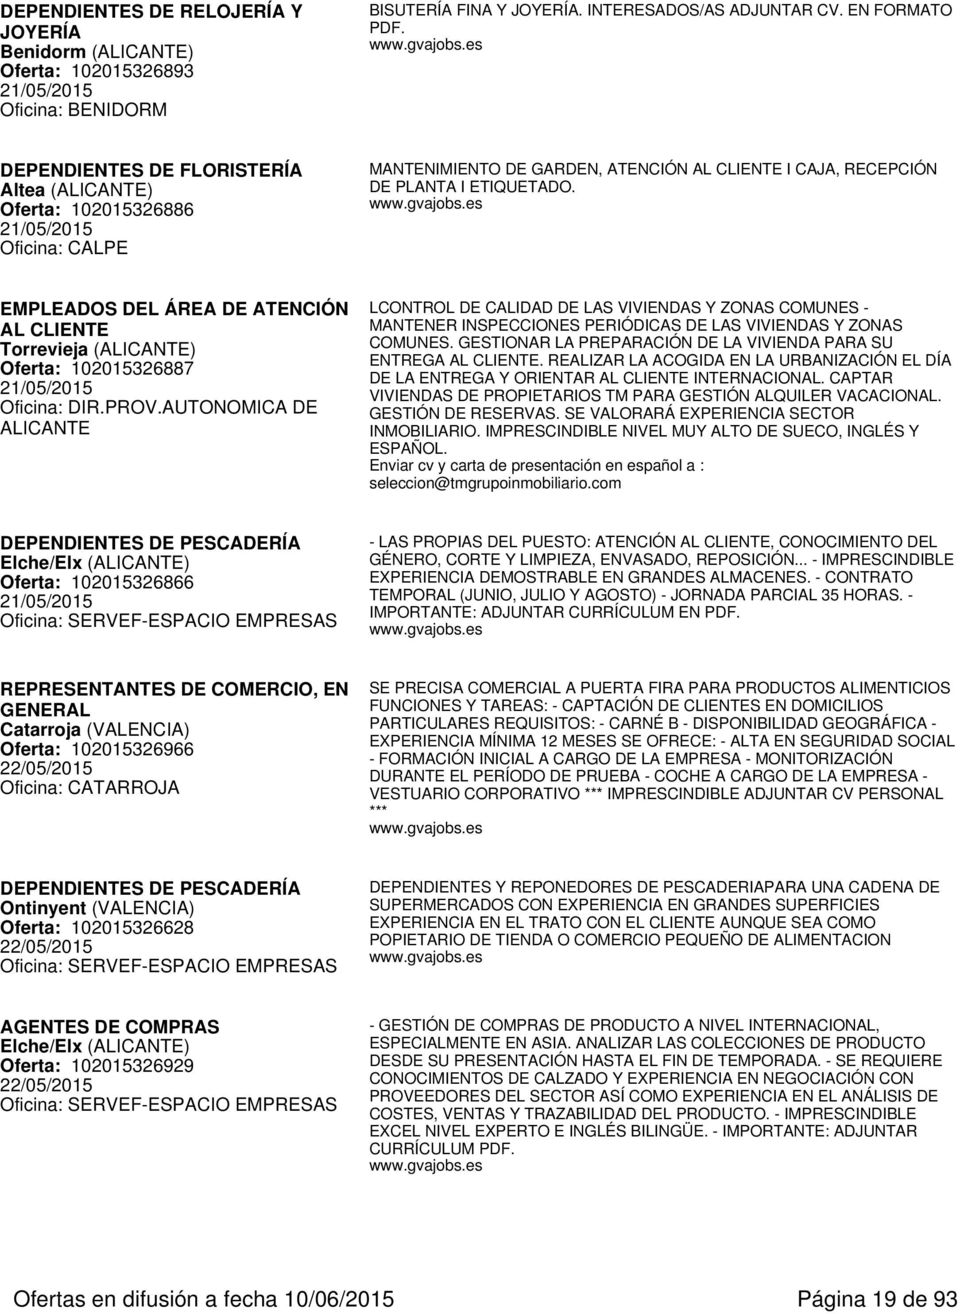 EMPLEADOS DEL ÁREA DE ATENCIÓN AL CLIENTE Torrevieja (ALICANTE) Oferta: 102015326887 21/05/2015 Oficina: DIR.PROV.